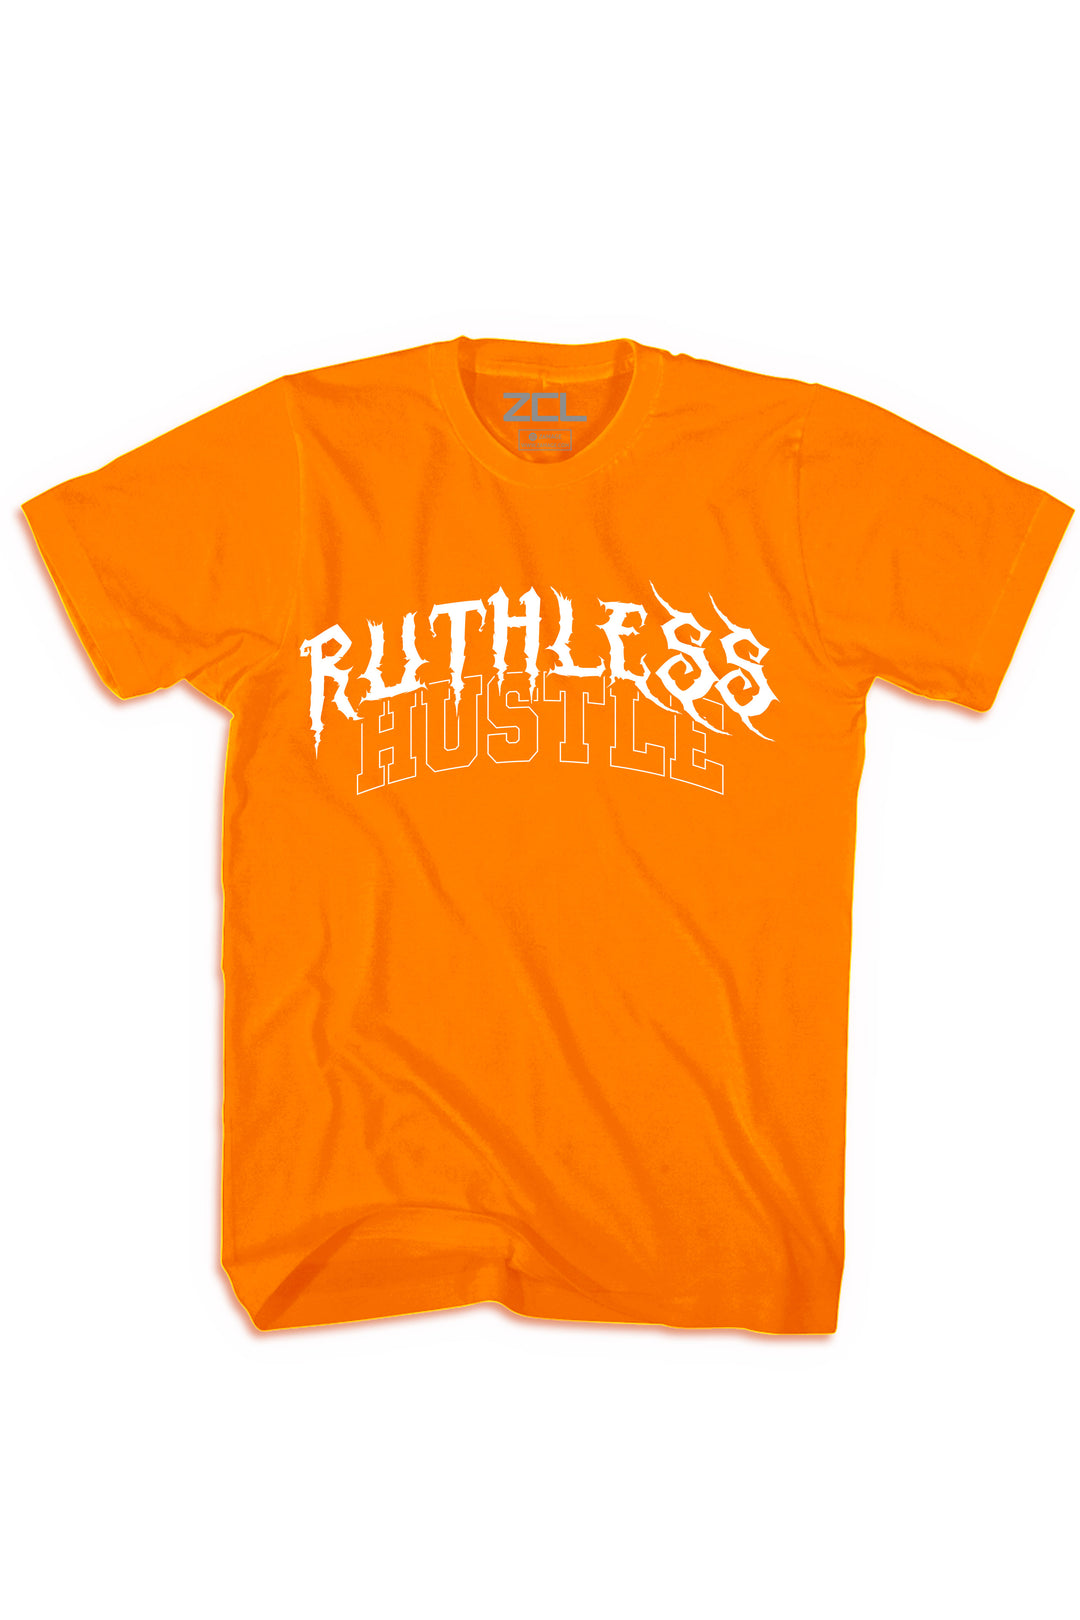 Ruthless Hustle Tee (White Logo) - Zamage